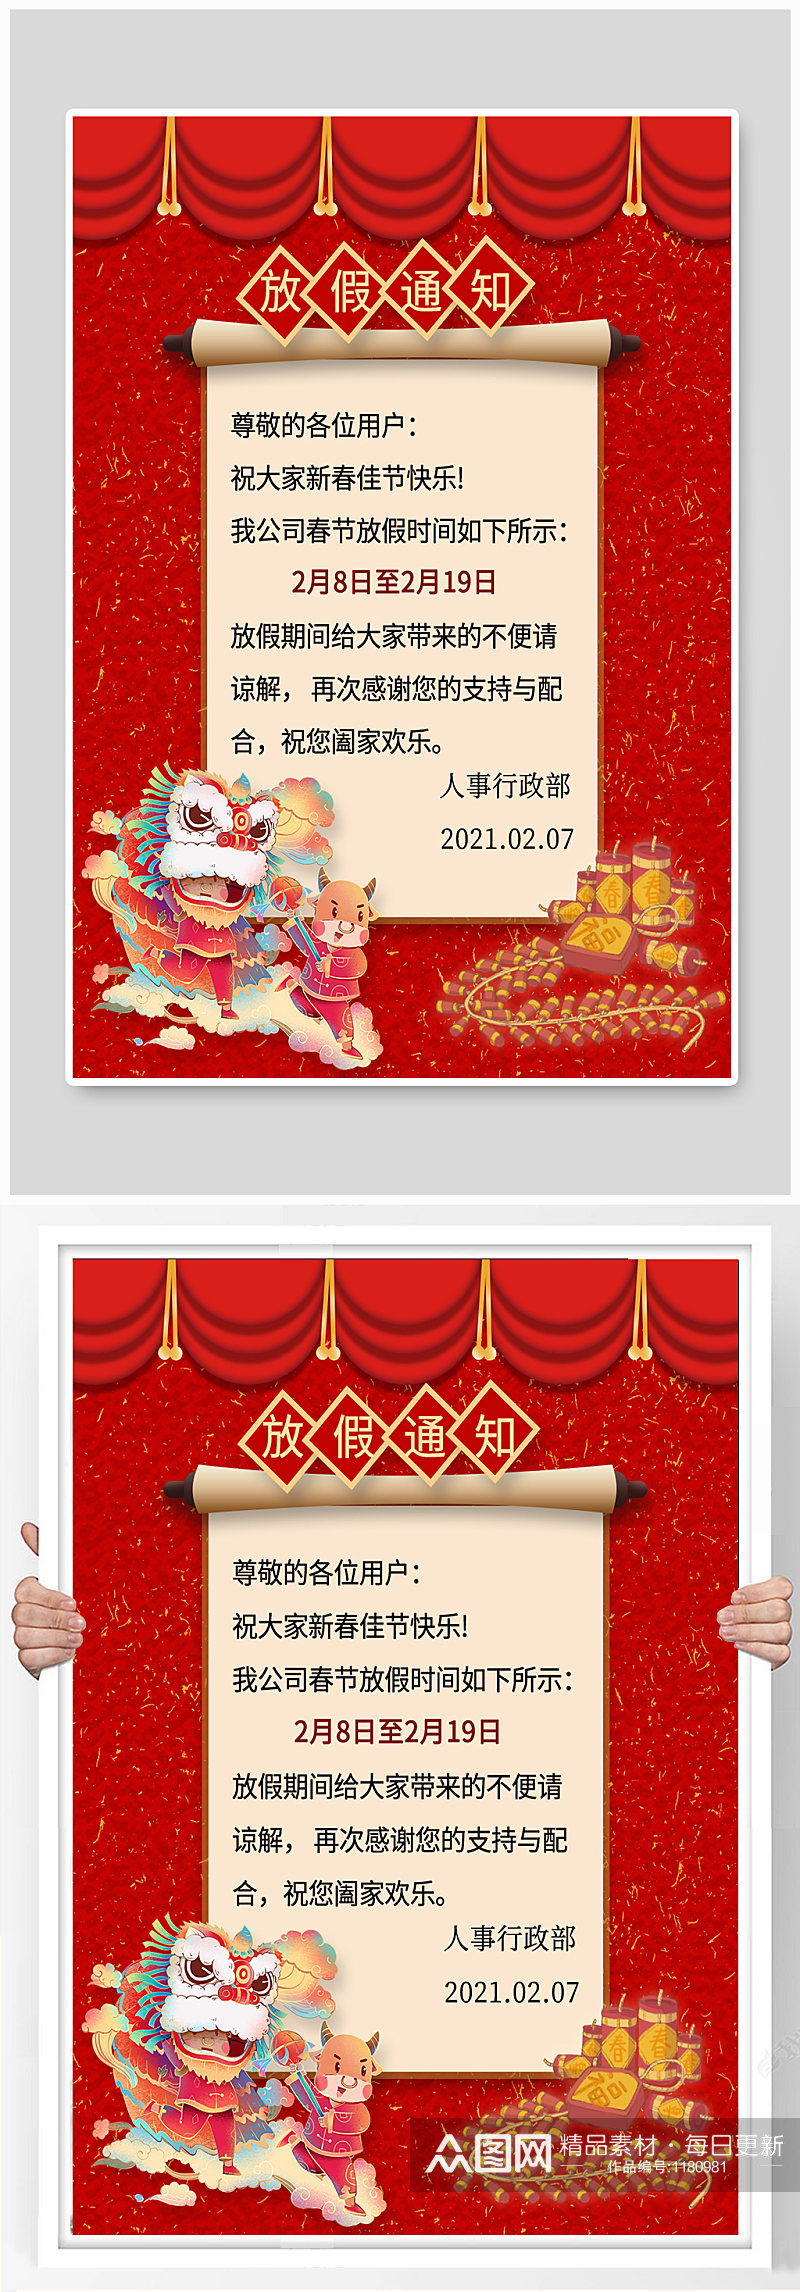 春节放假通知红色中国风卷轴海报素材